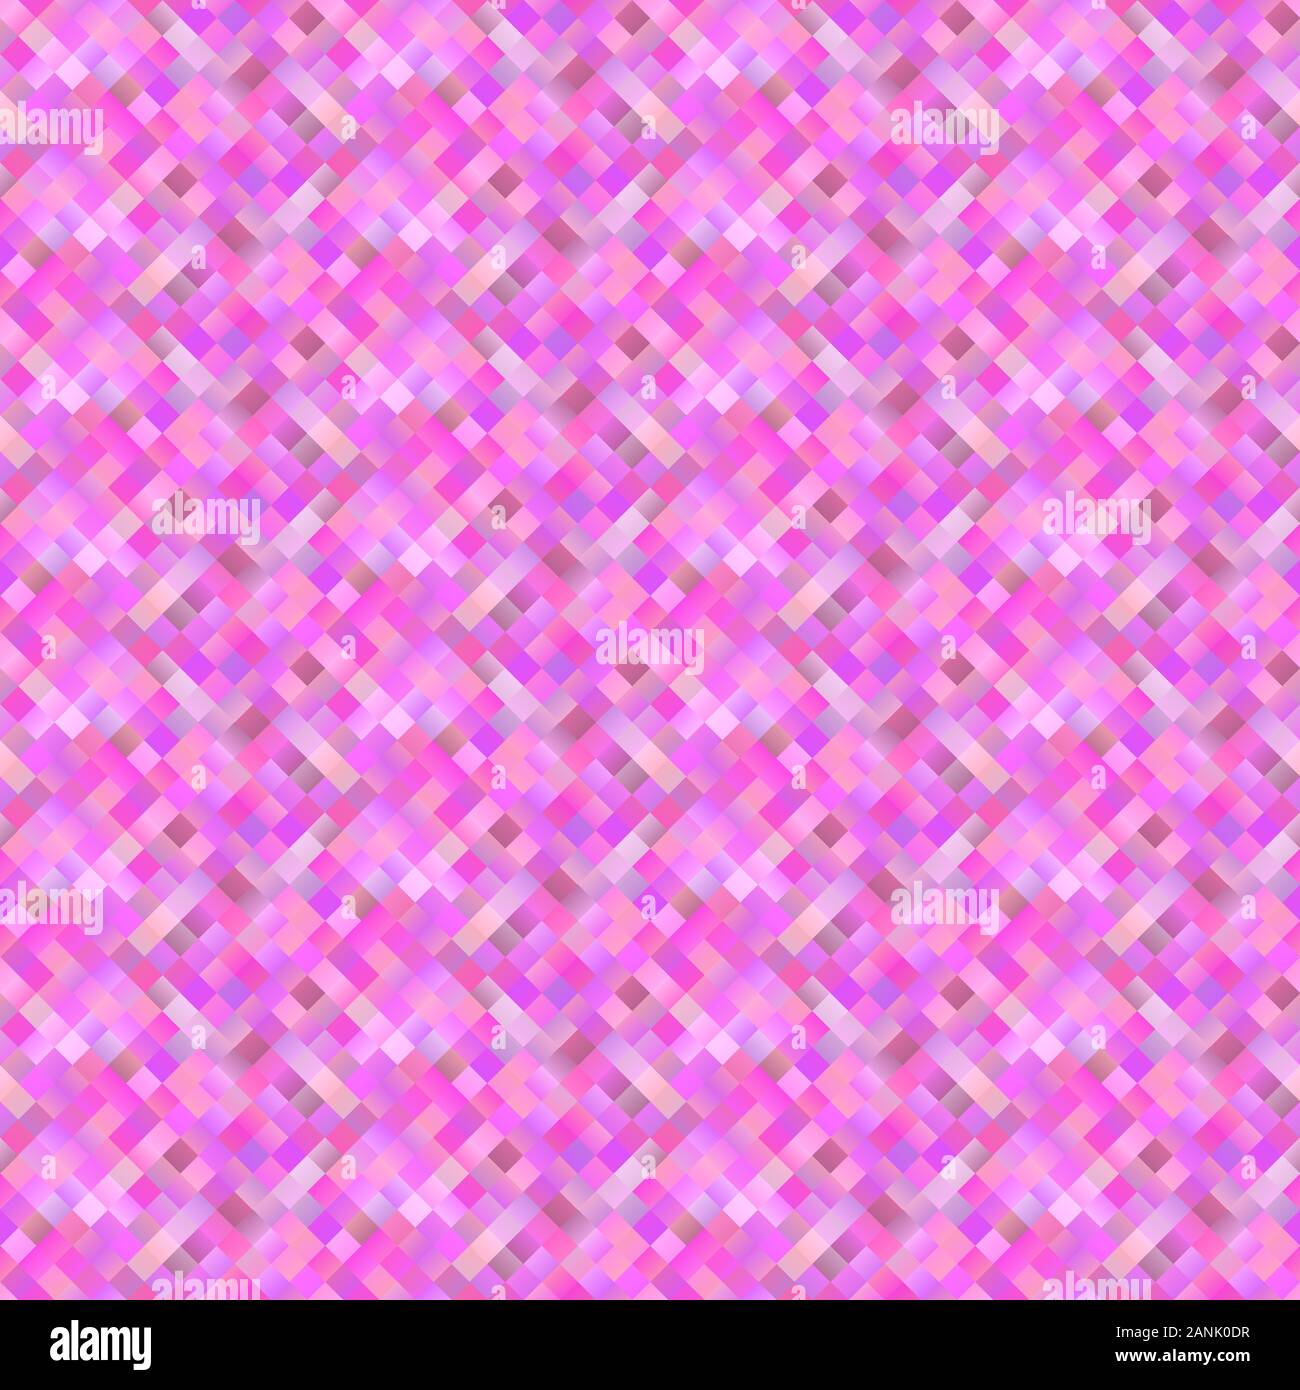 Nahtlose farbigen quadratischen Muster Hintergrund - abstrakte geometrische Vektorgrafik von Plätzen Stock Vektor